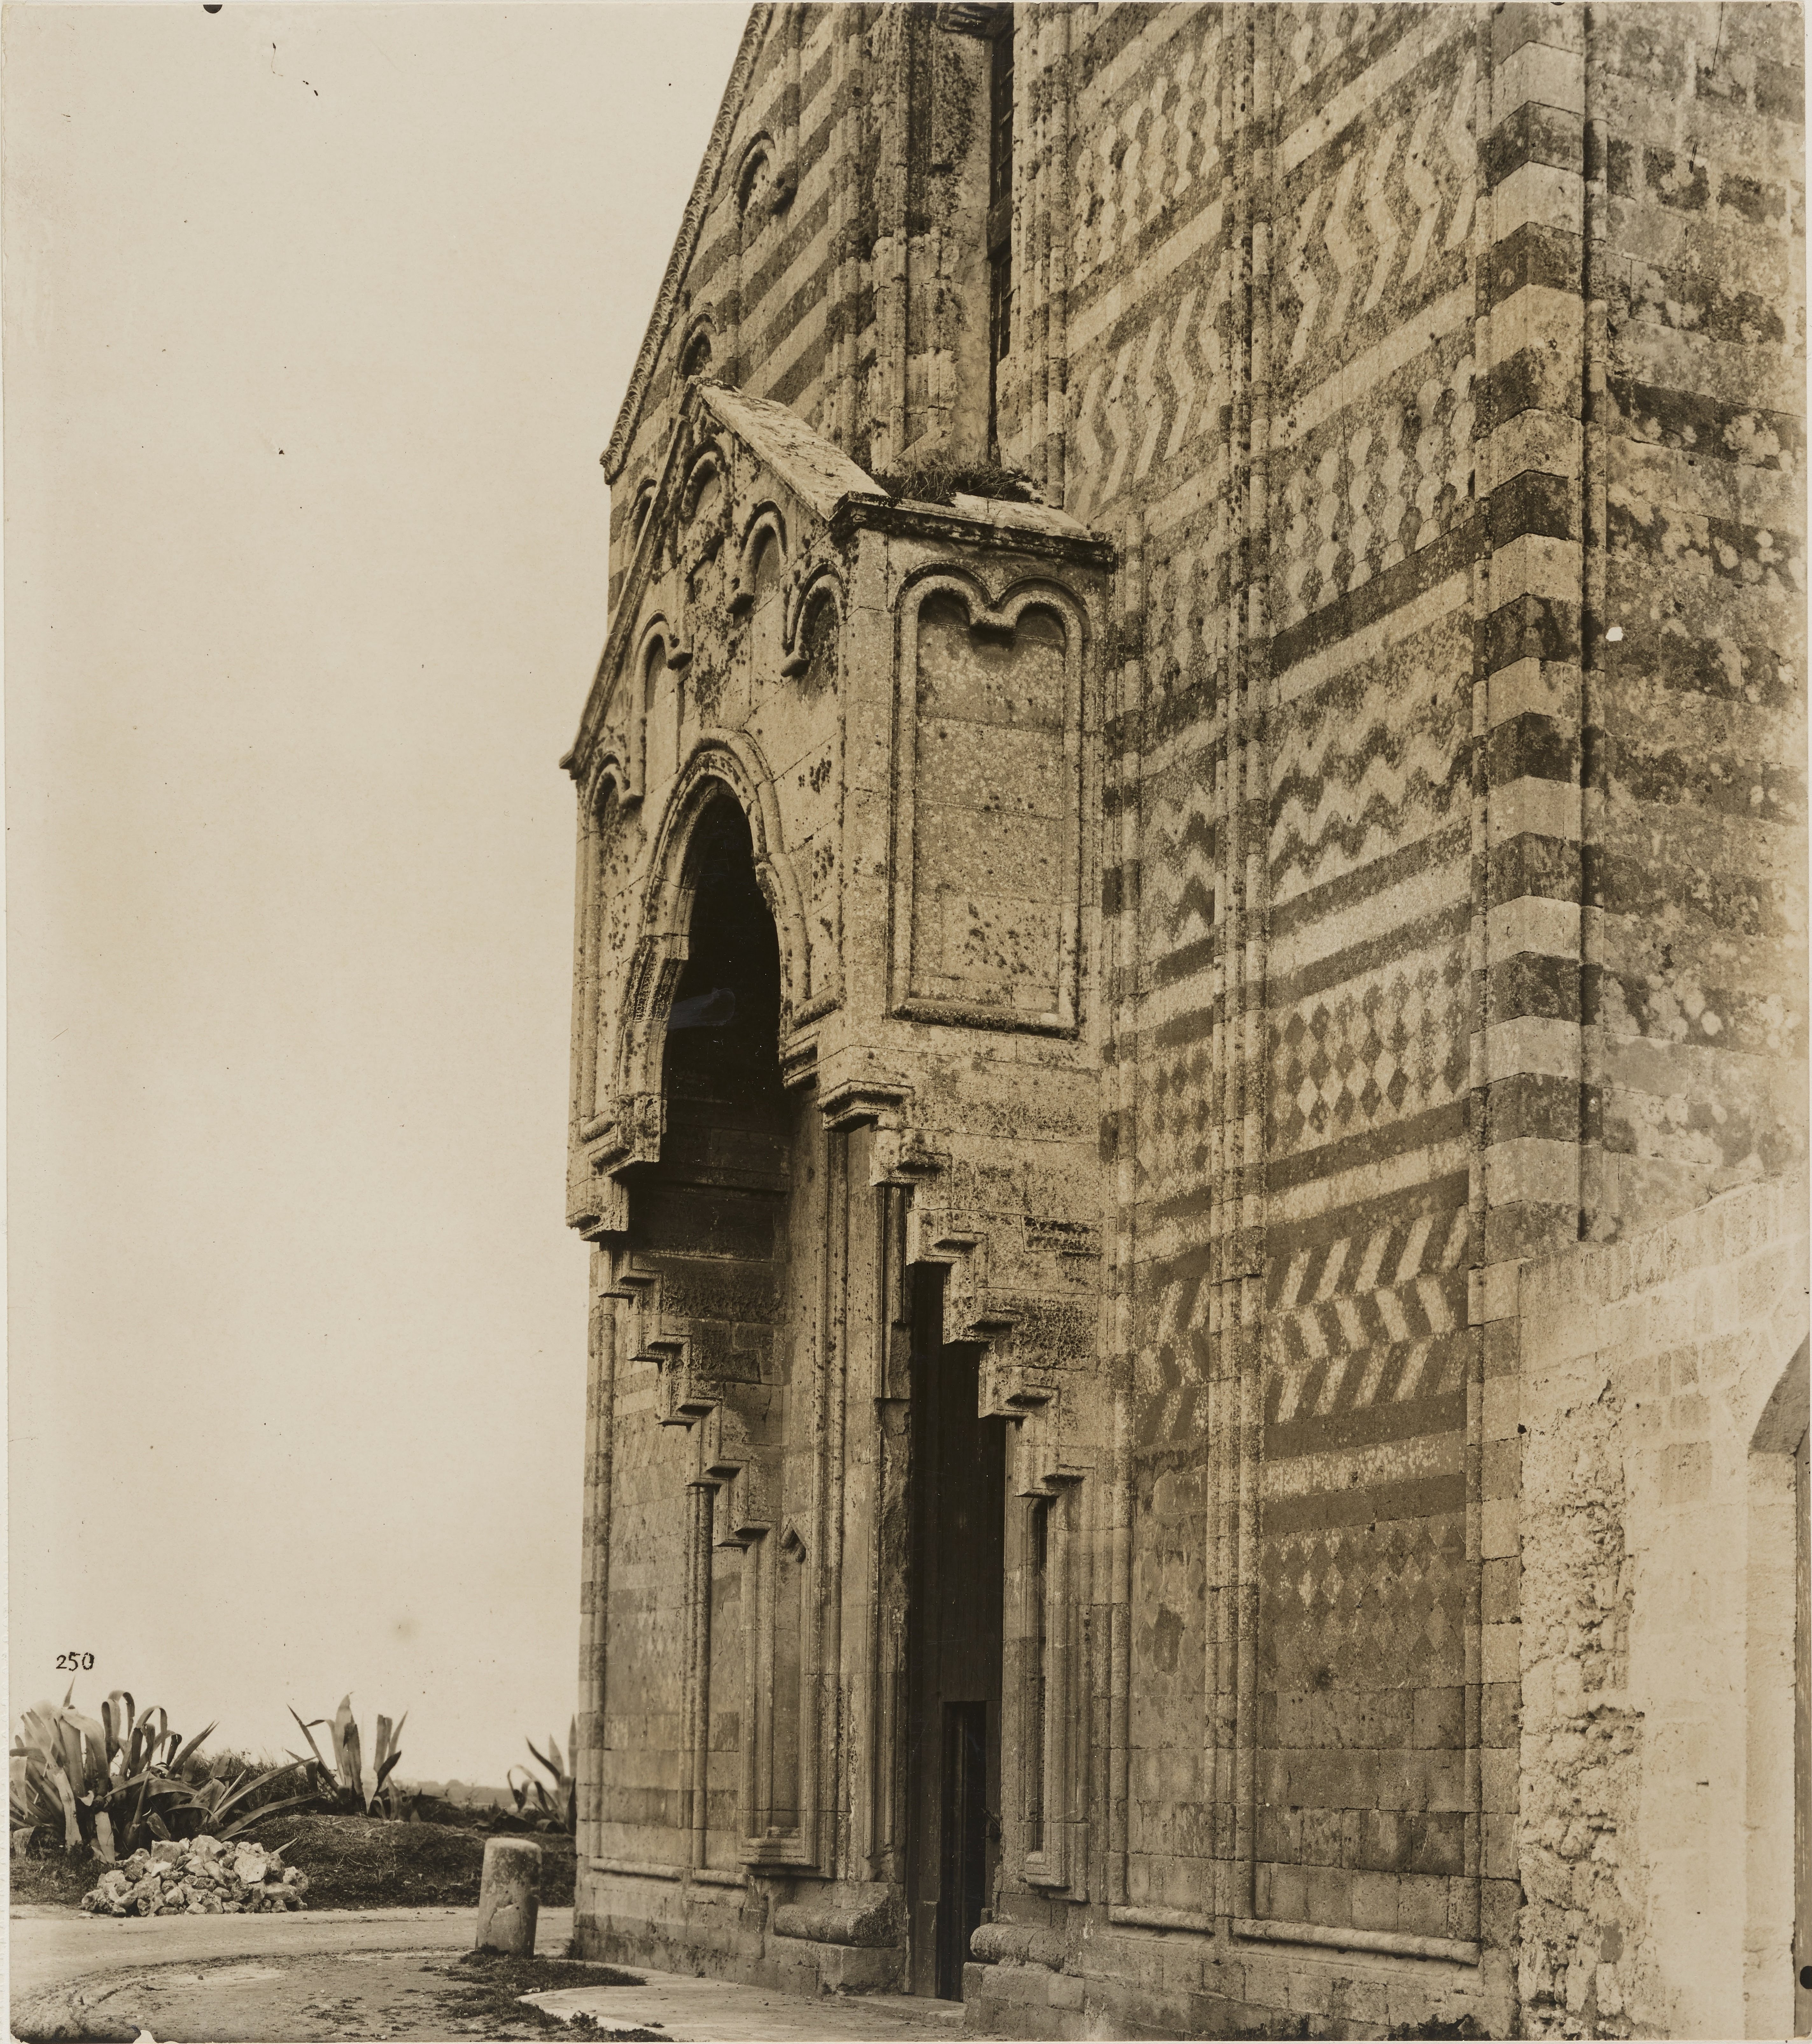 Fotografo non identificato, Brindisi - Chiesa di S. Maria del Casale, protiro, 1901-1925, gelatina ai sali d'argento, MPI141594